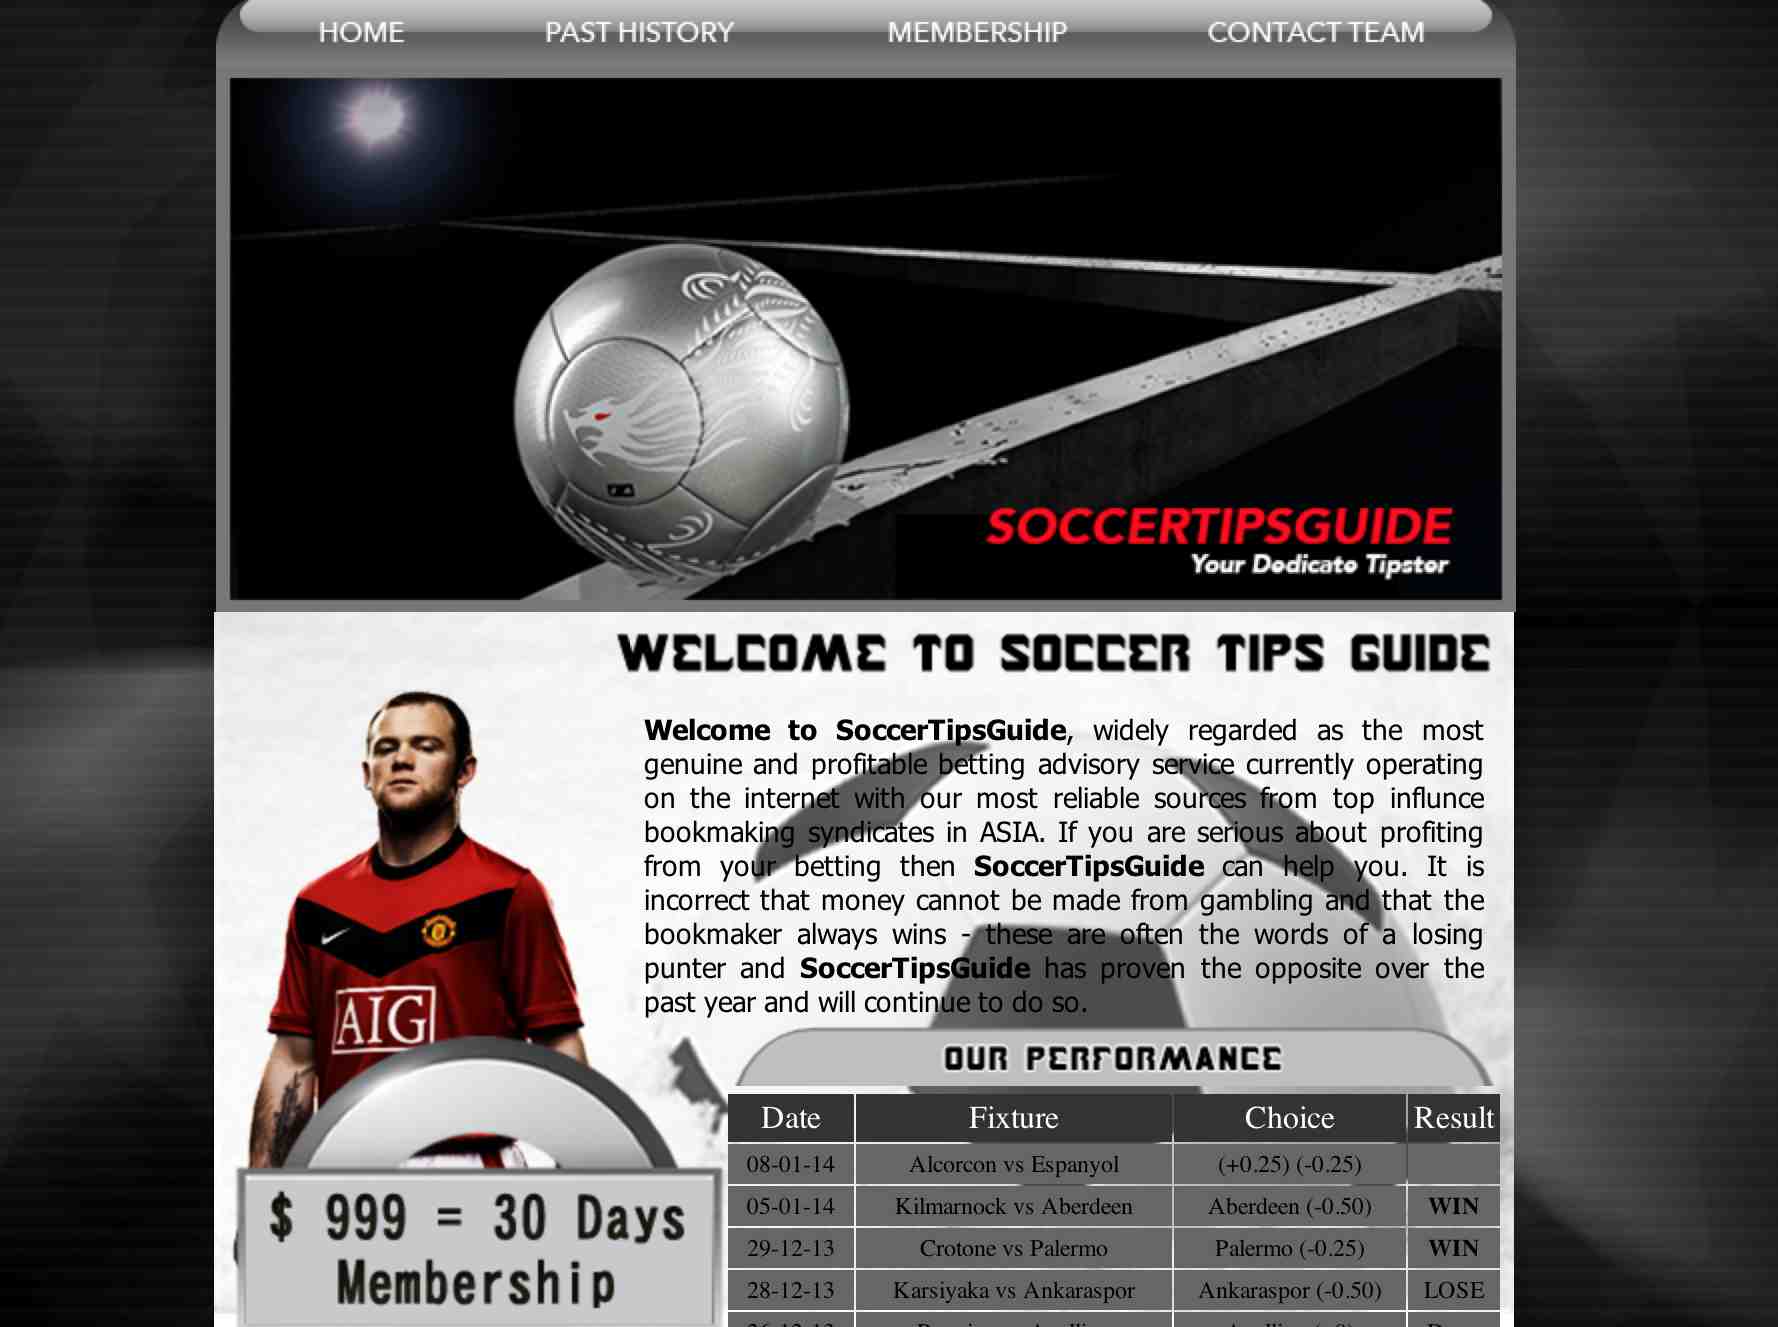 Soccer tips guide